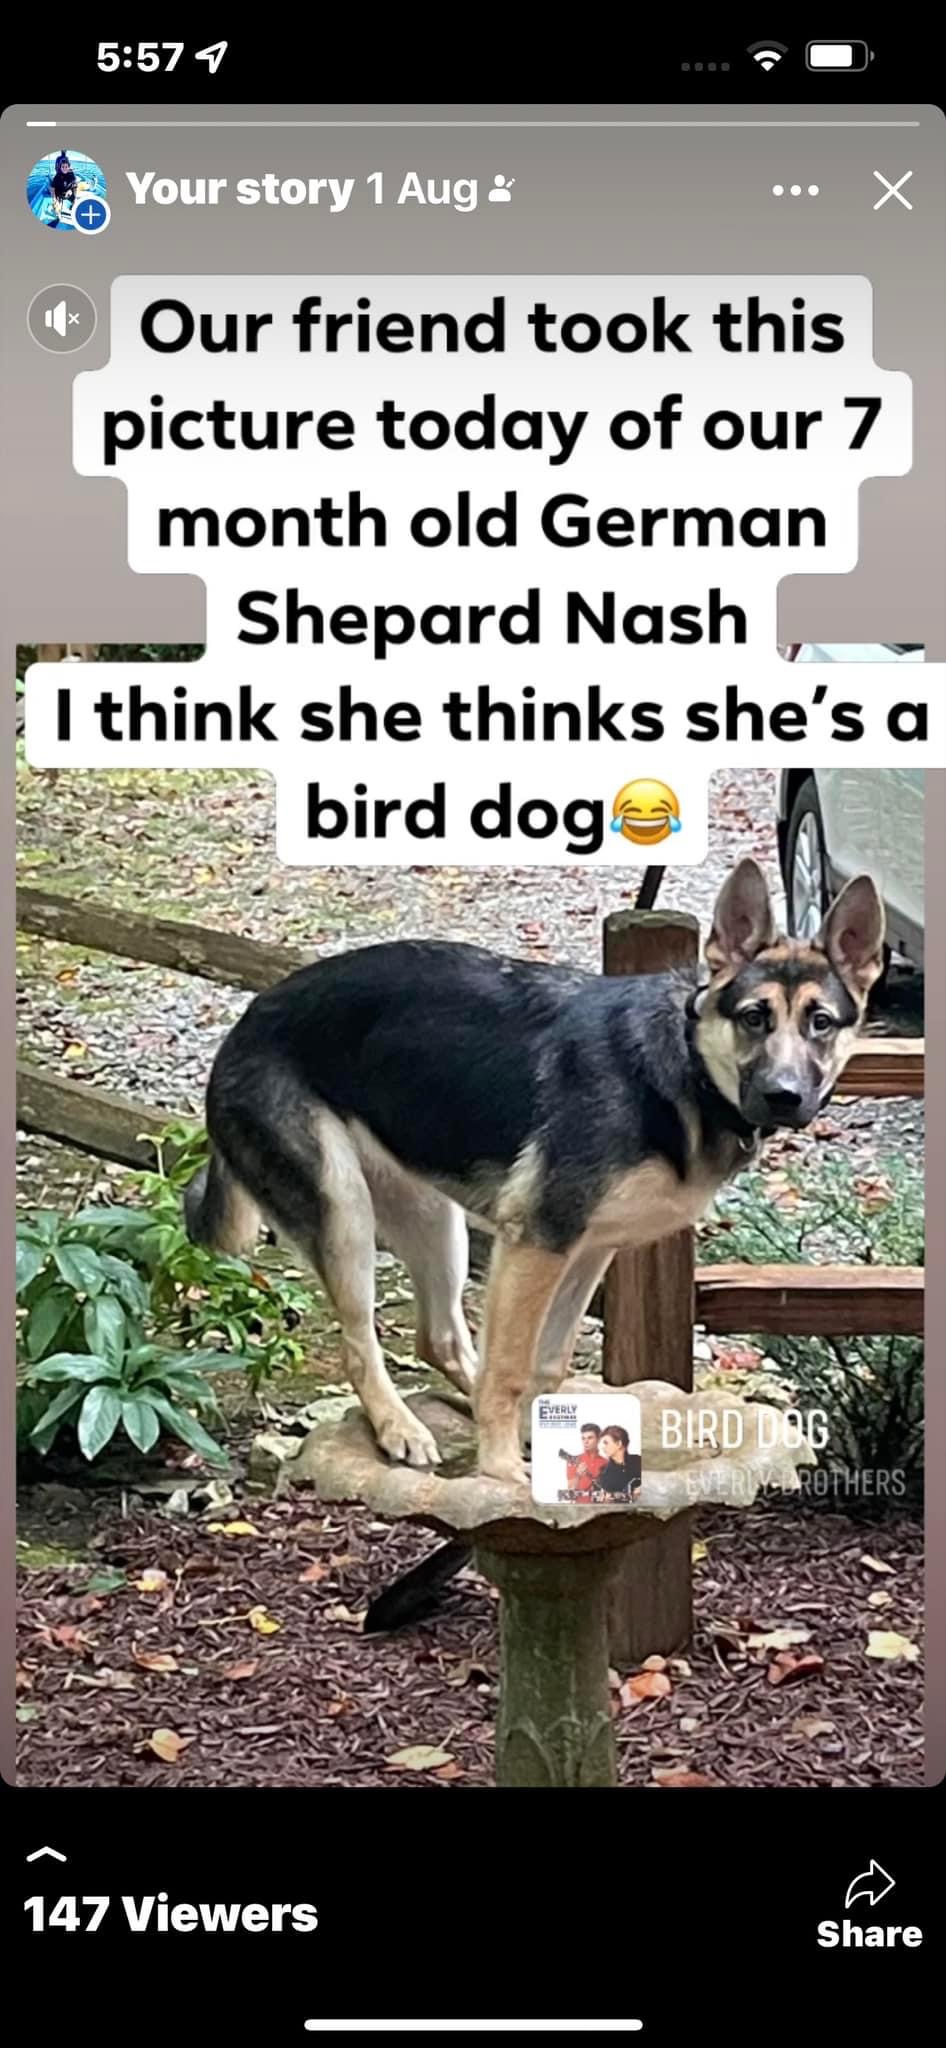 Image of Nash, Lost Dog